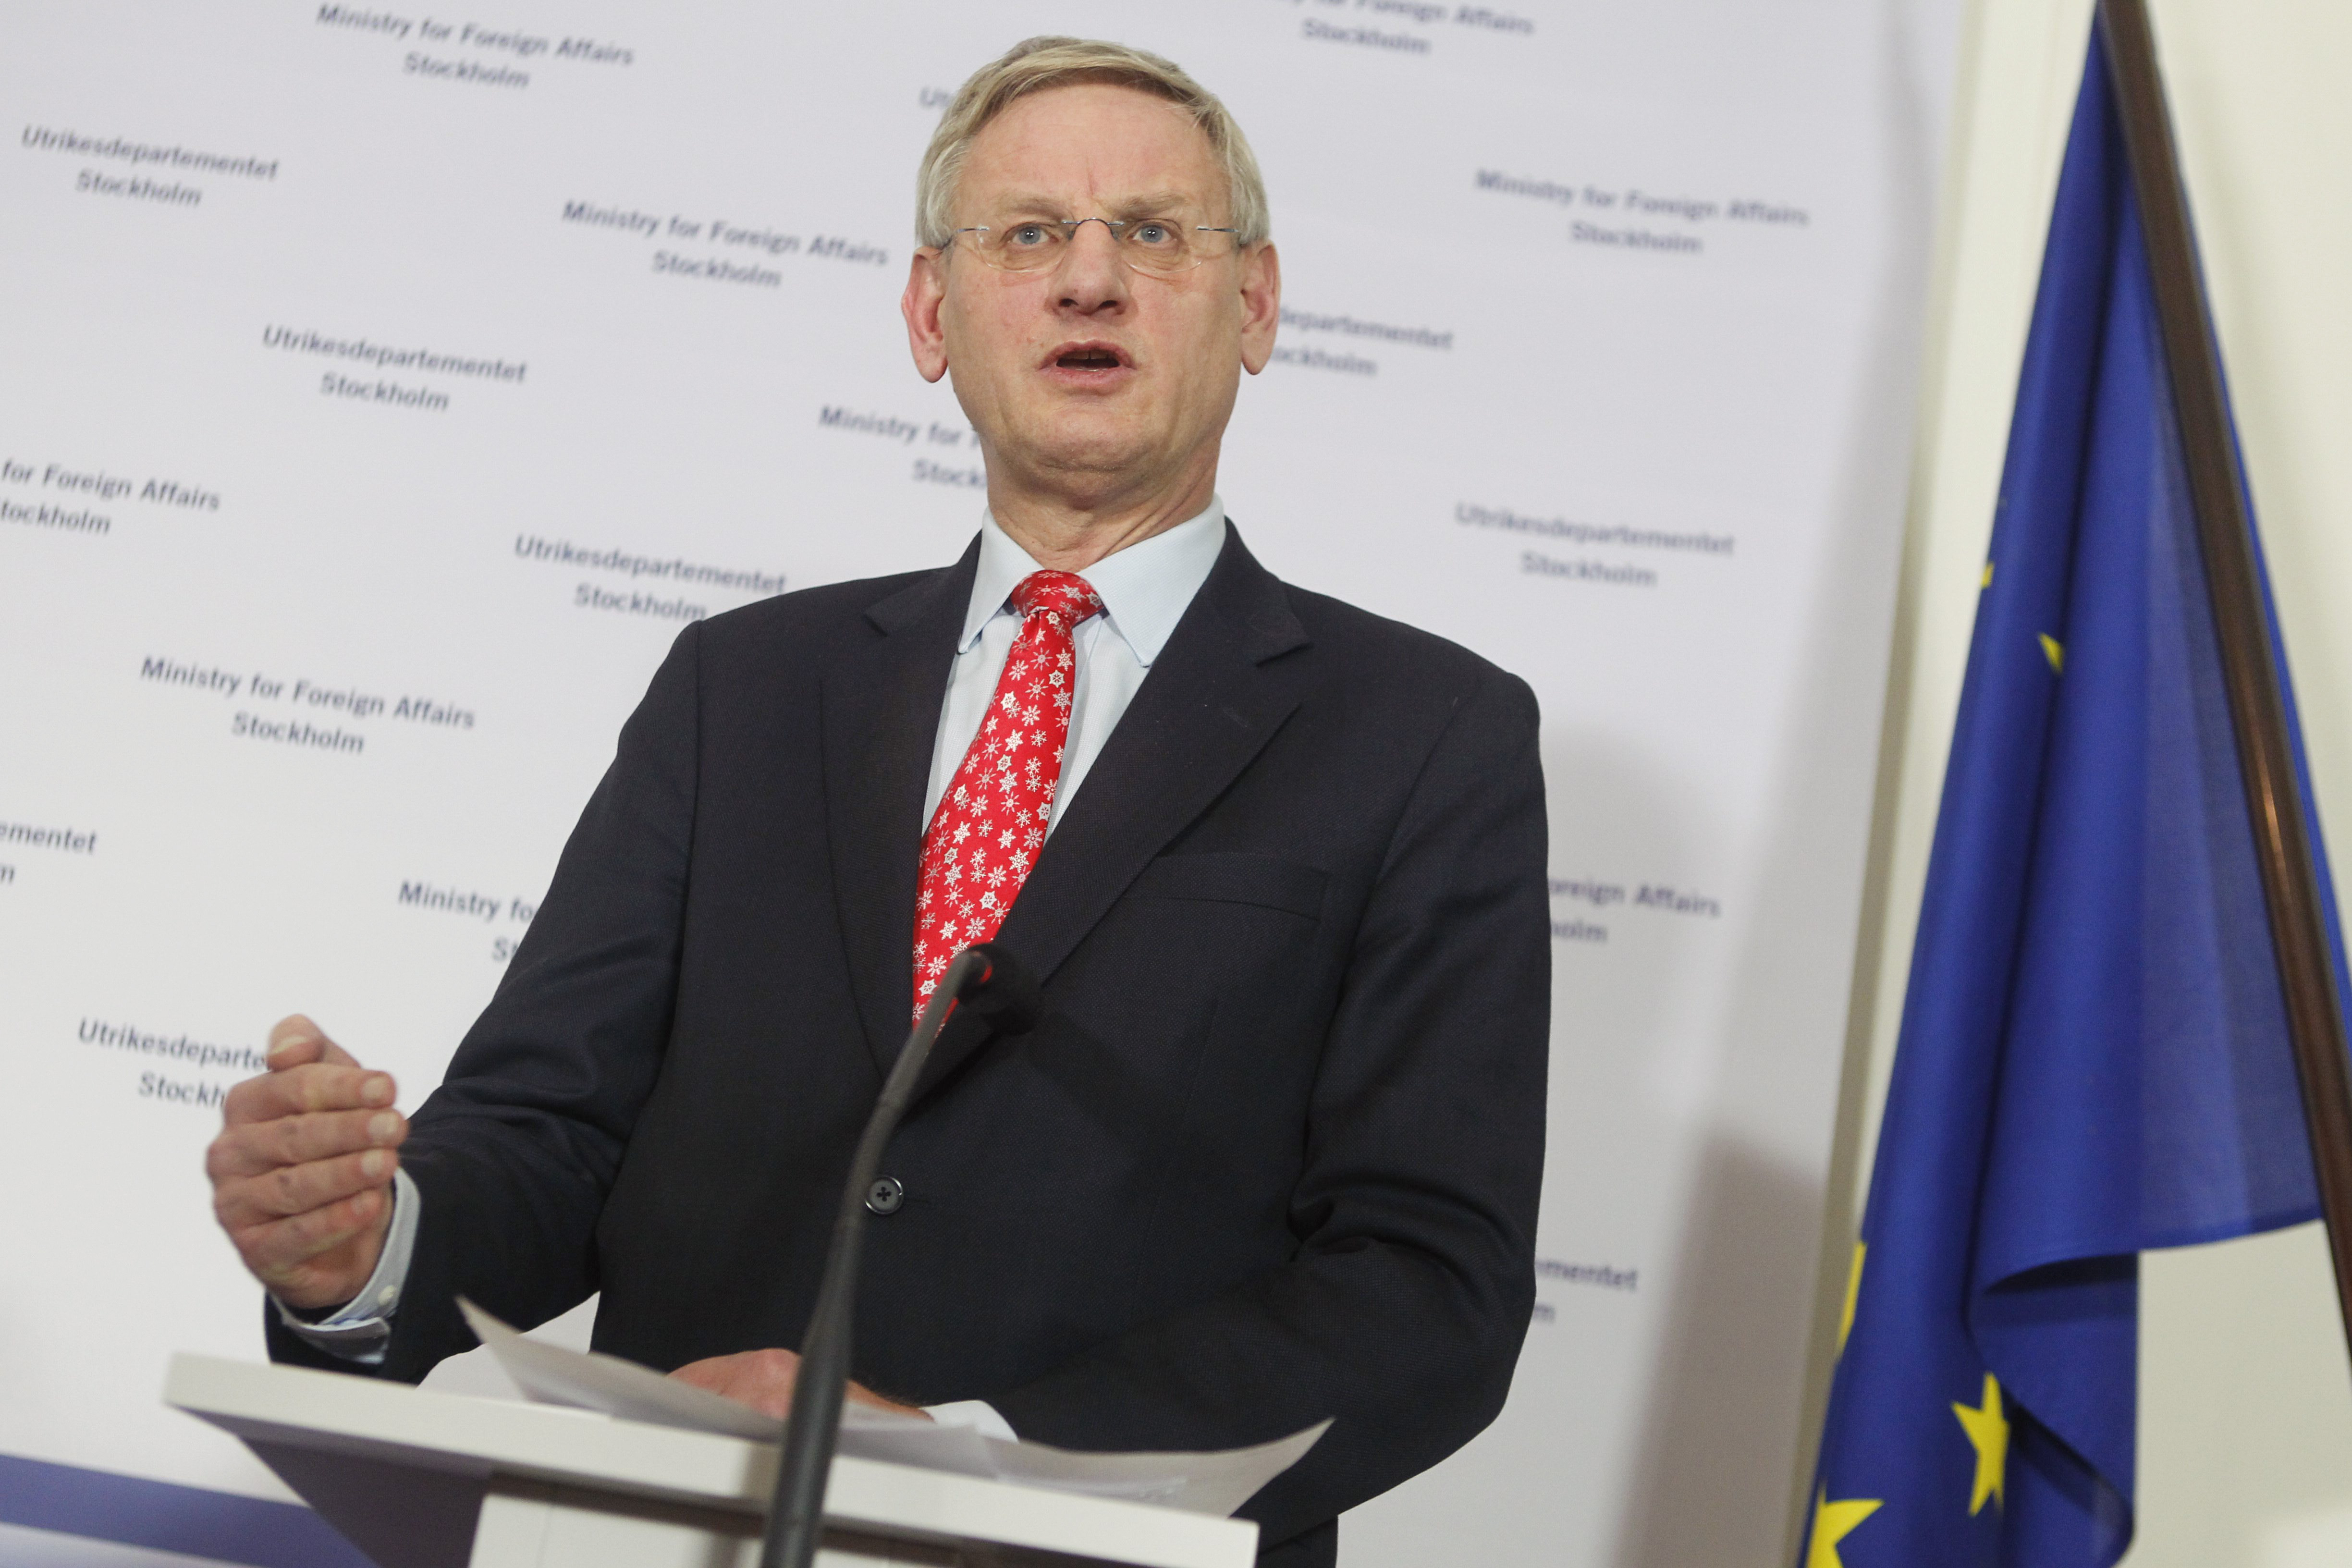 Carl Bildt och regeringen har tidigare fått kritik för att ha en hycklande inställning vad gäller vapenförsäljning till bland annat Tunisien.